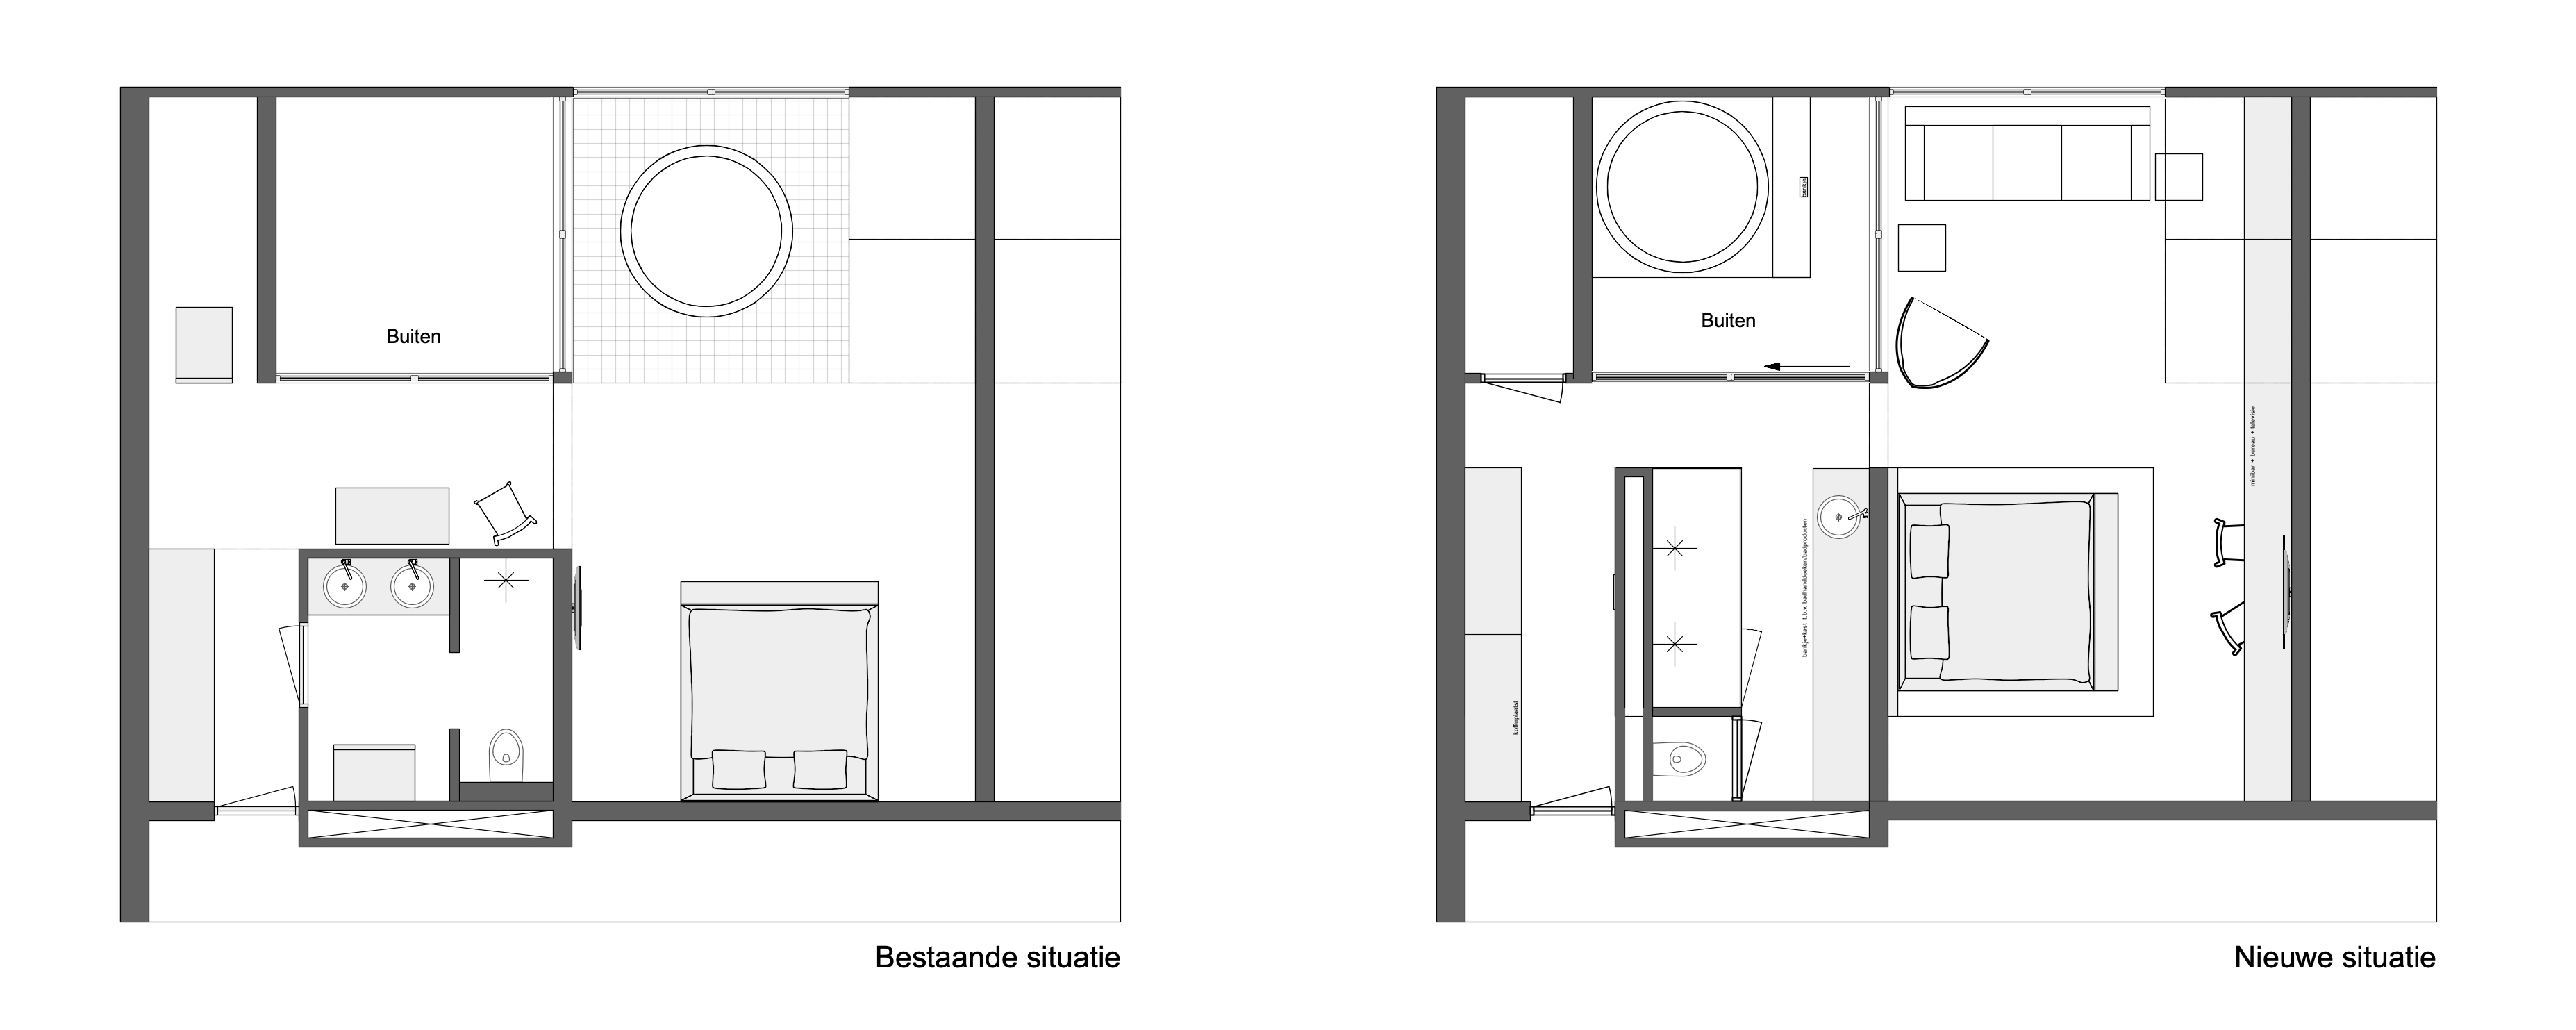 heden Susteen land Badkamer architect & maatwerk badkamers | Studio Kroes | Interieurarchitect